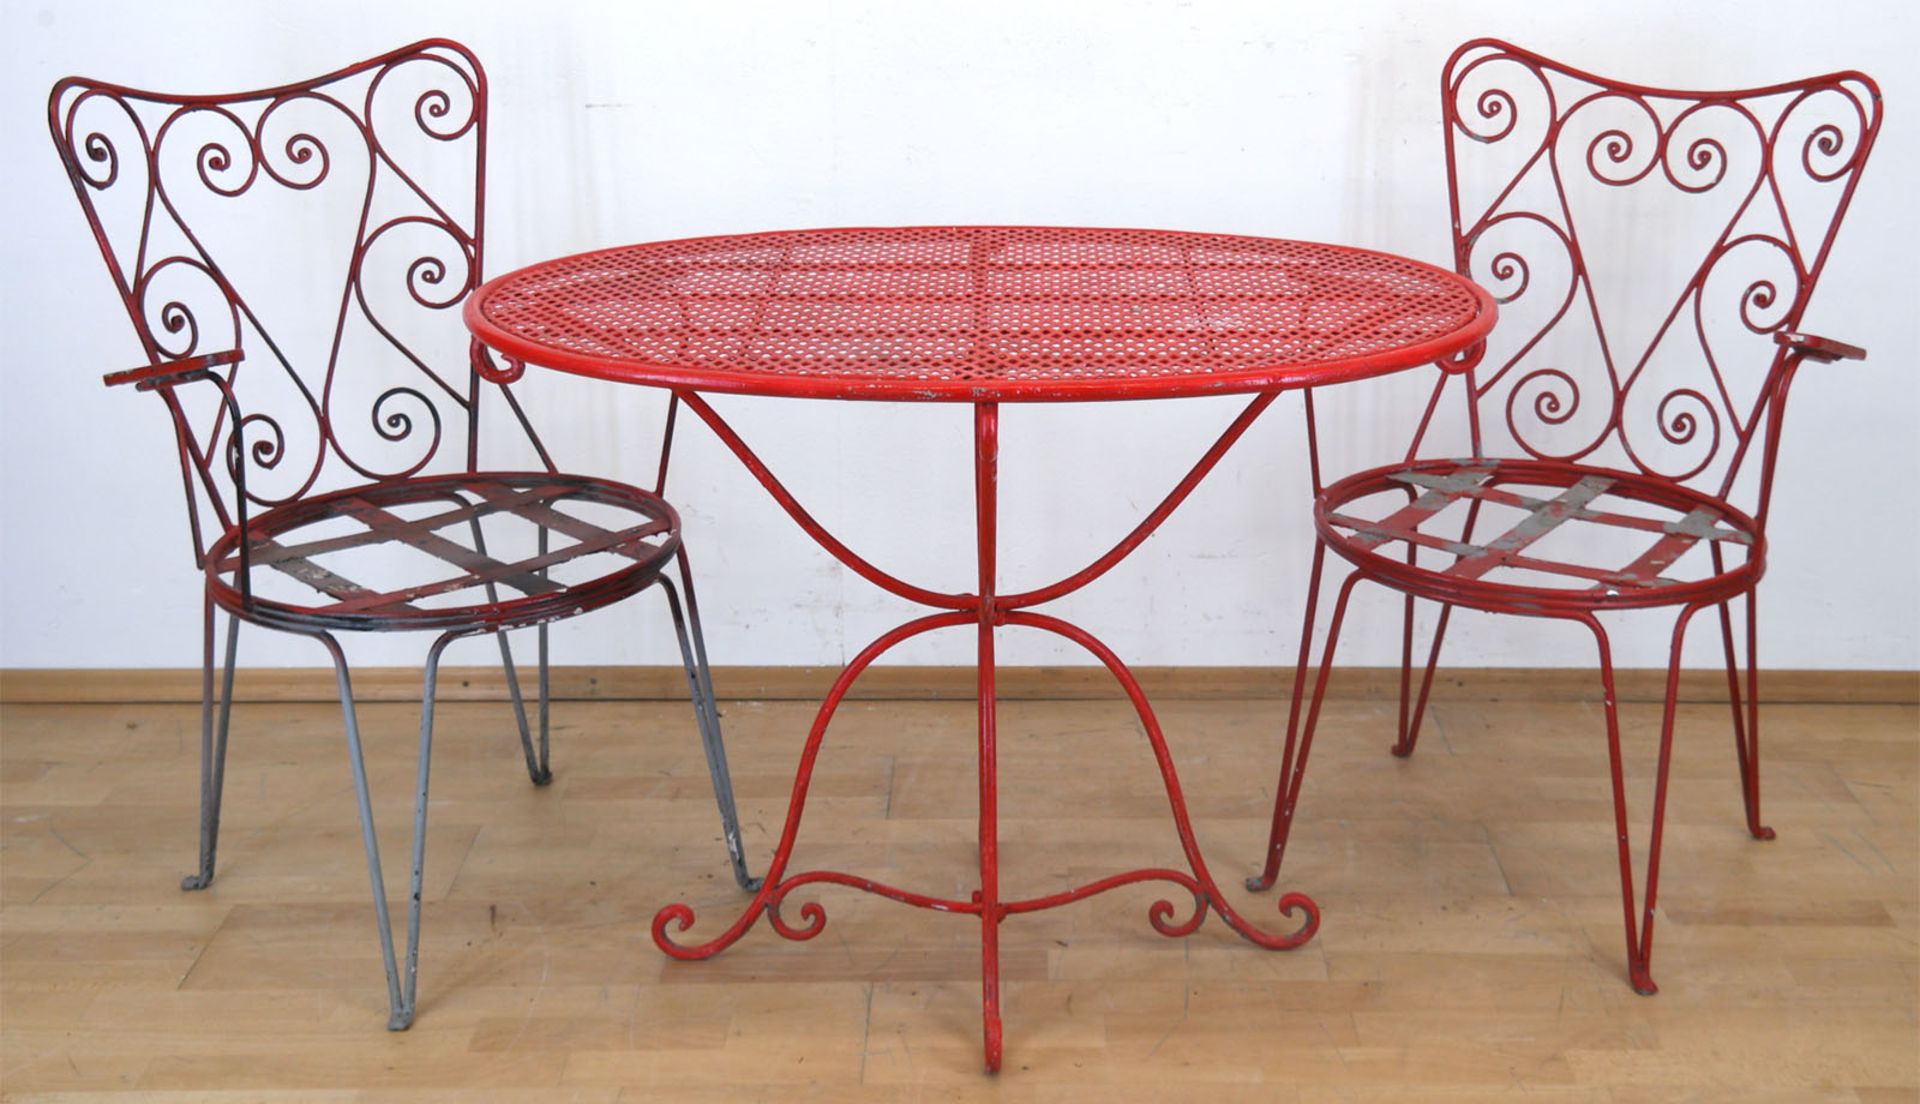 Gartengarnitur, 50er Jahre, Eisen, rot gefaßt, bestehend aus 2 Armlehnstühlen ohne Sitz, 90x59x53 c